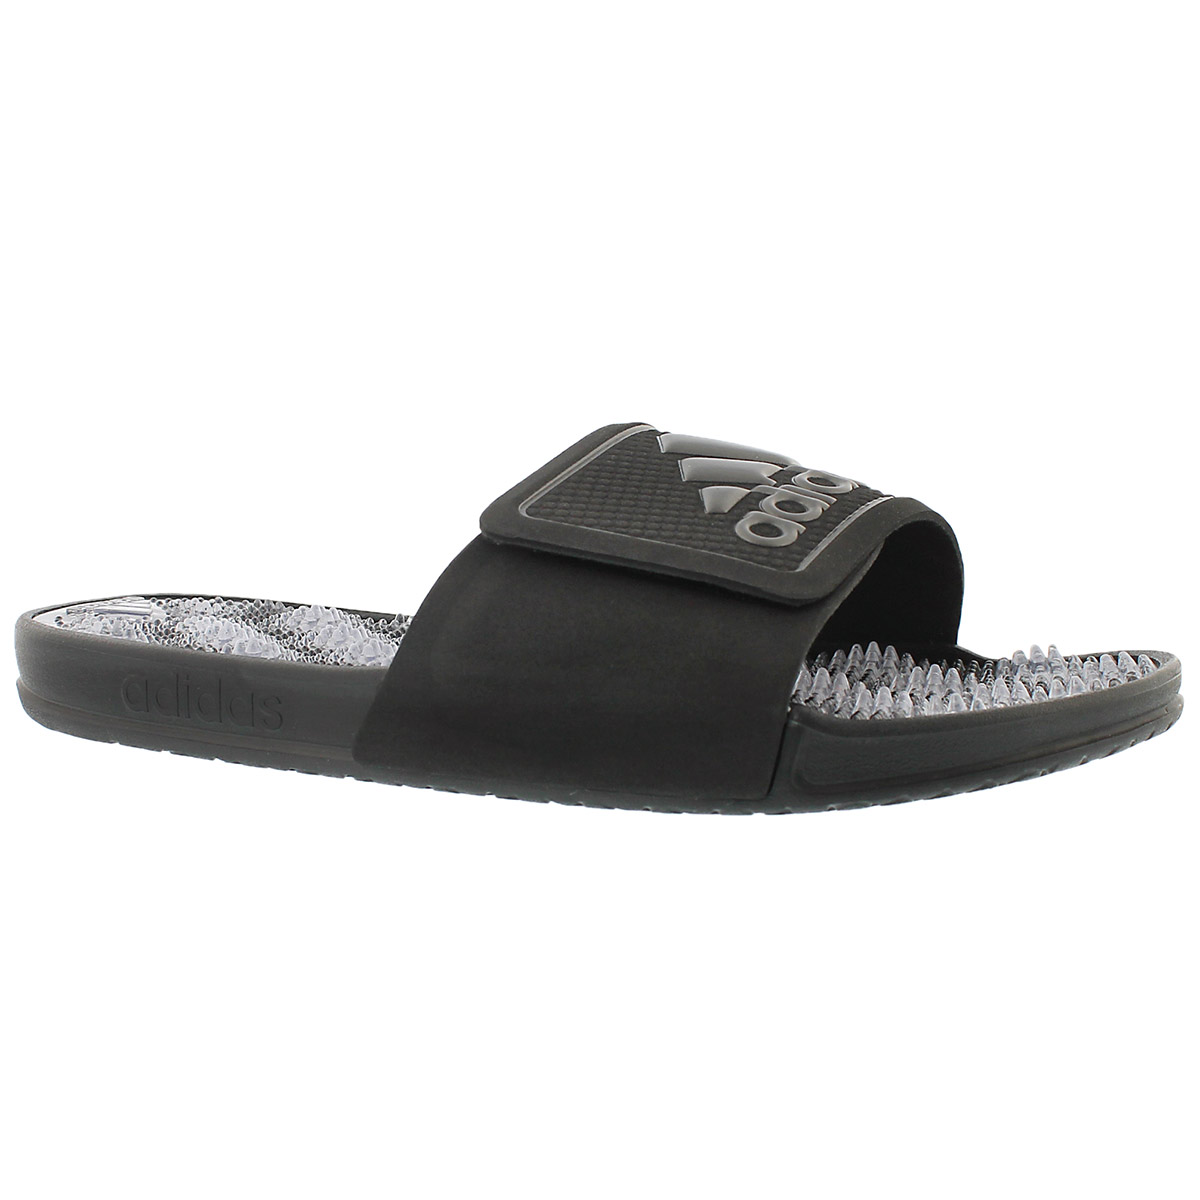 Adidas Men's Adissage 2.0 Slide Sandal | eBay